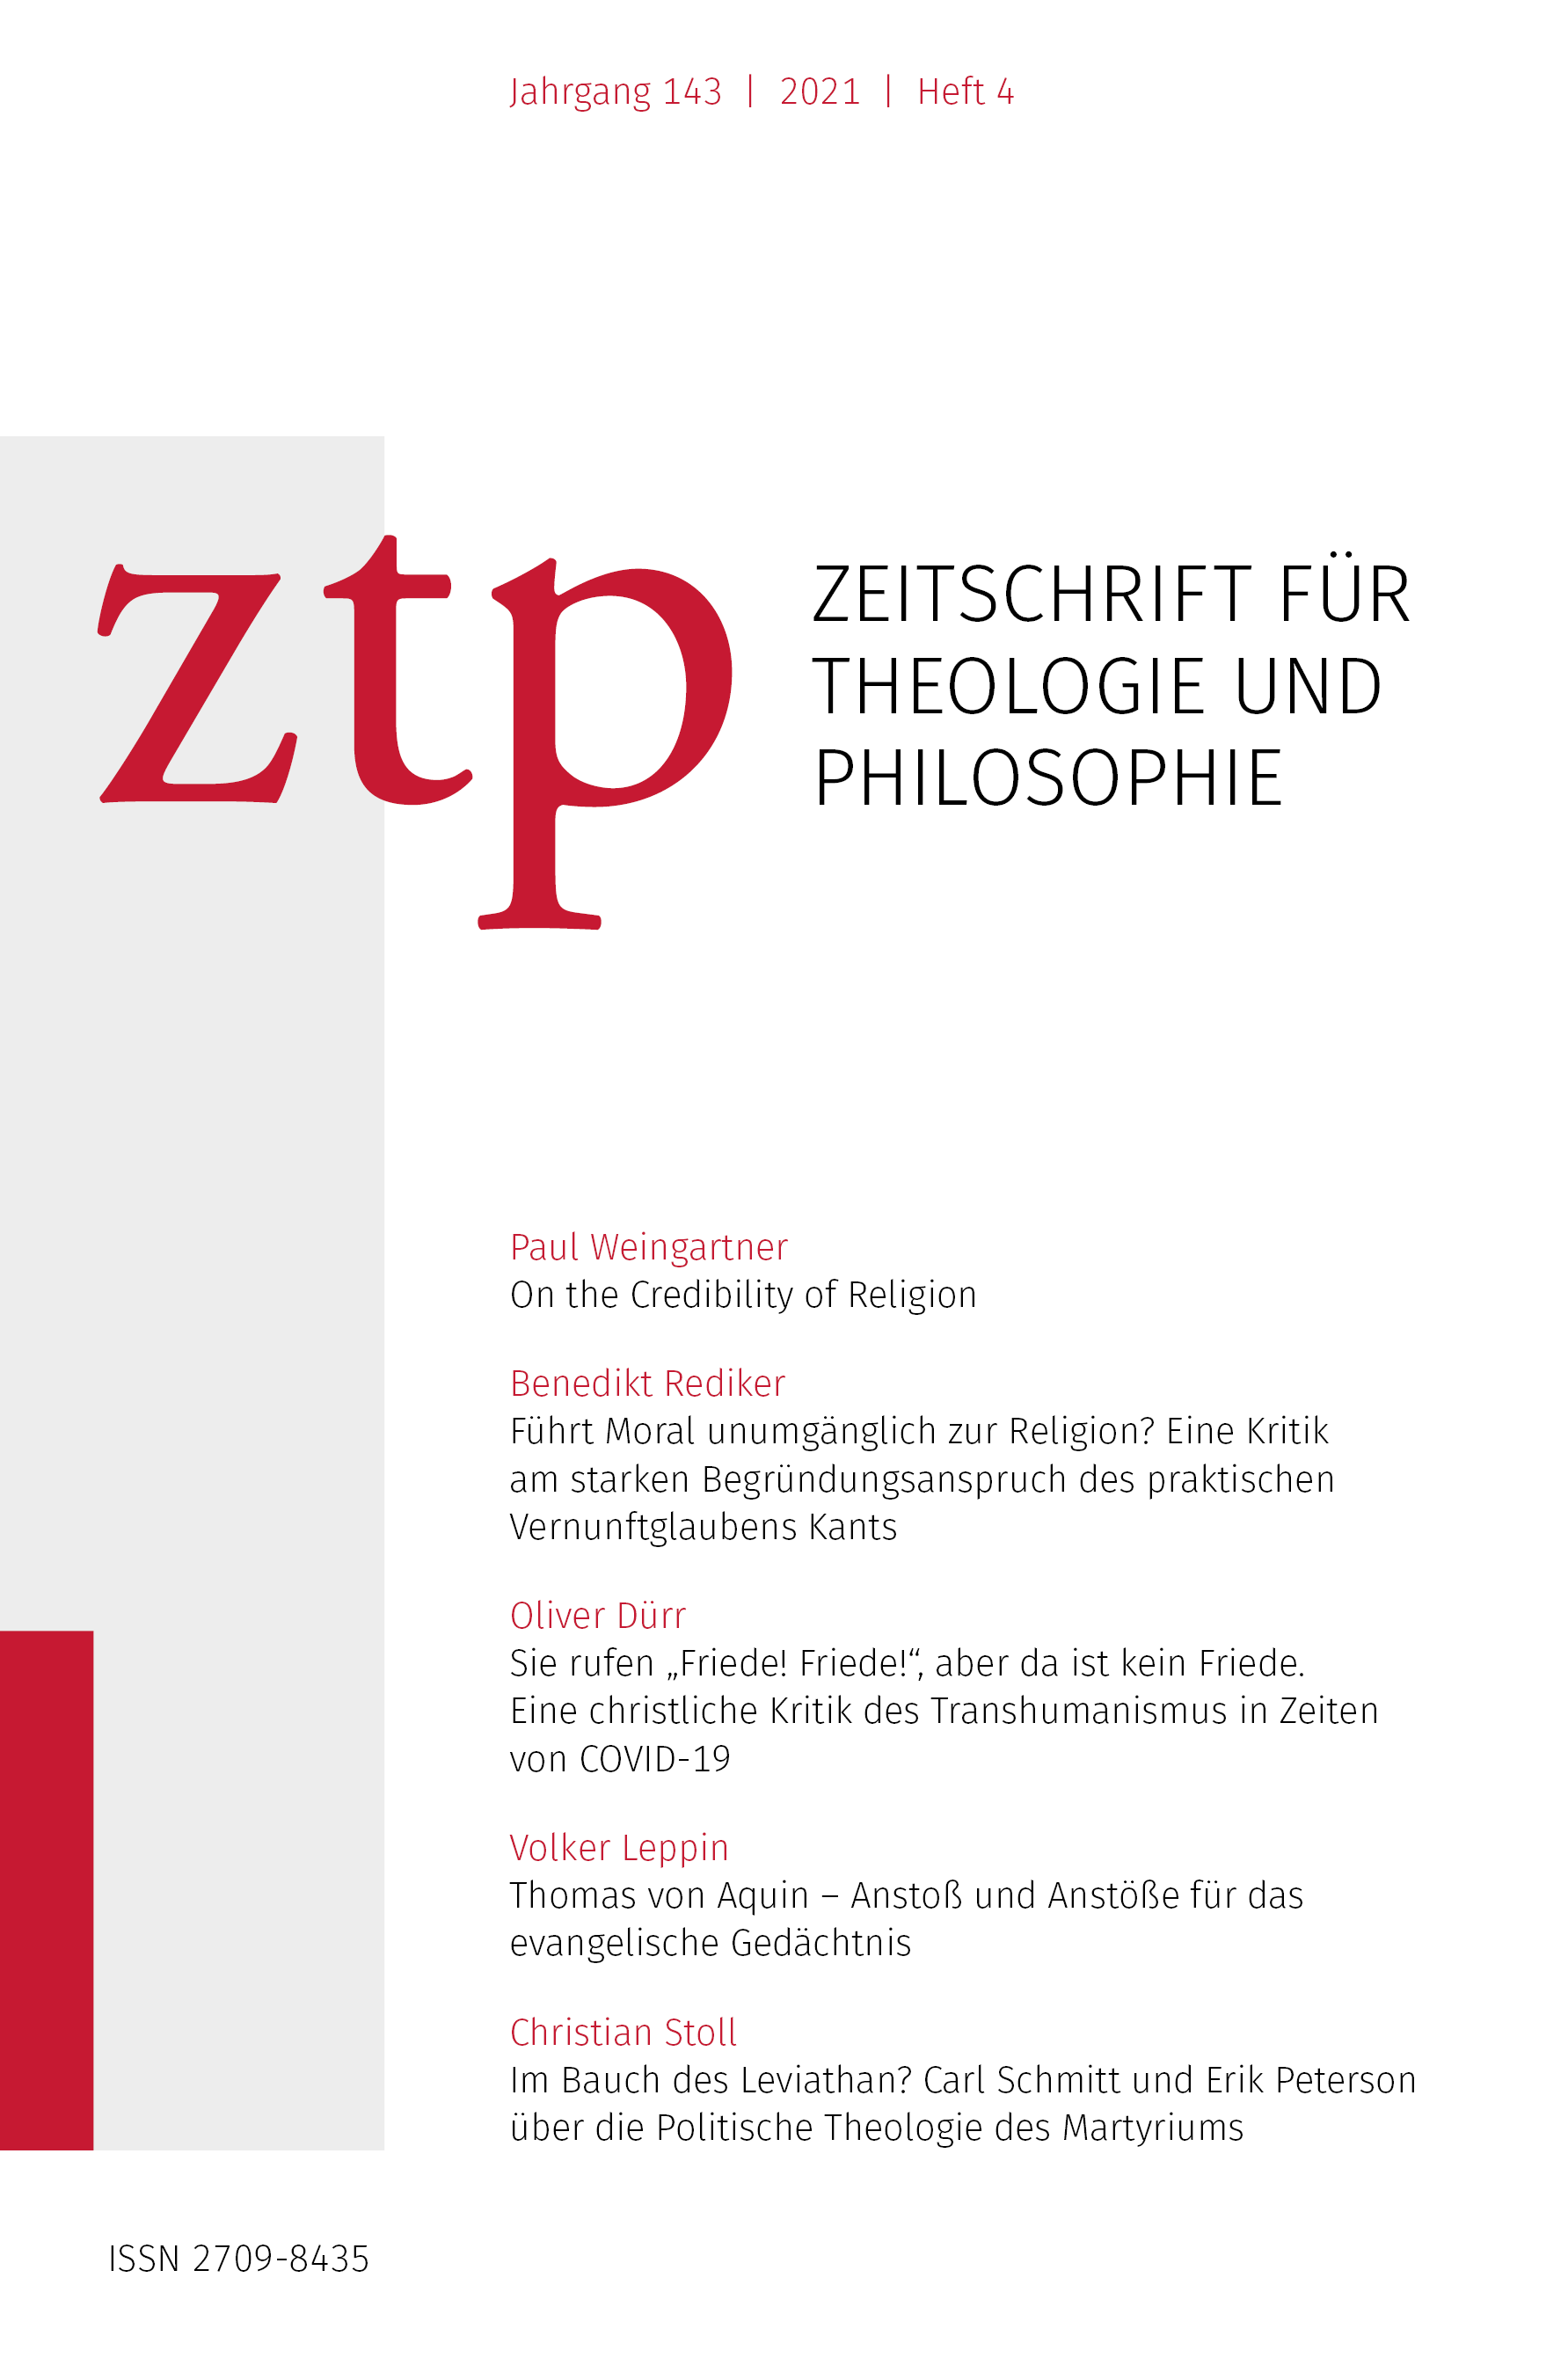 Zeitschrift für Theologie und Philosophie 143 (2021) 4